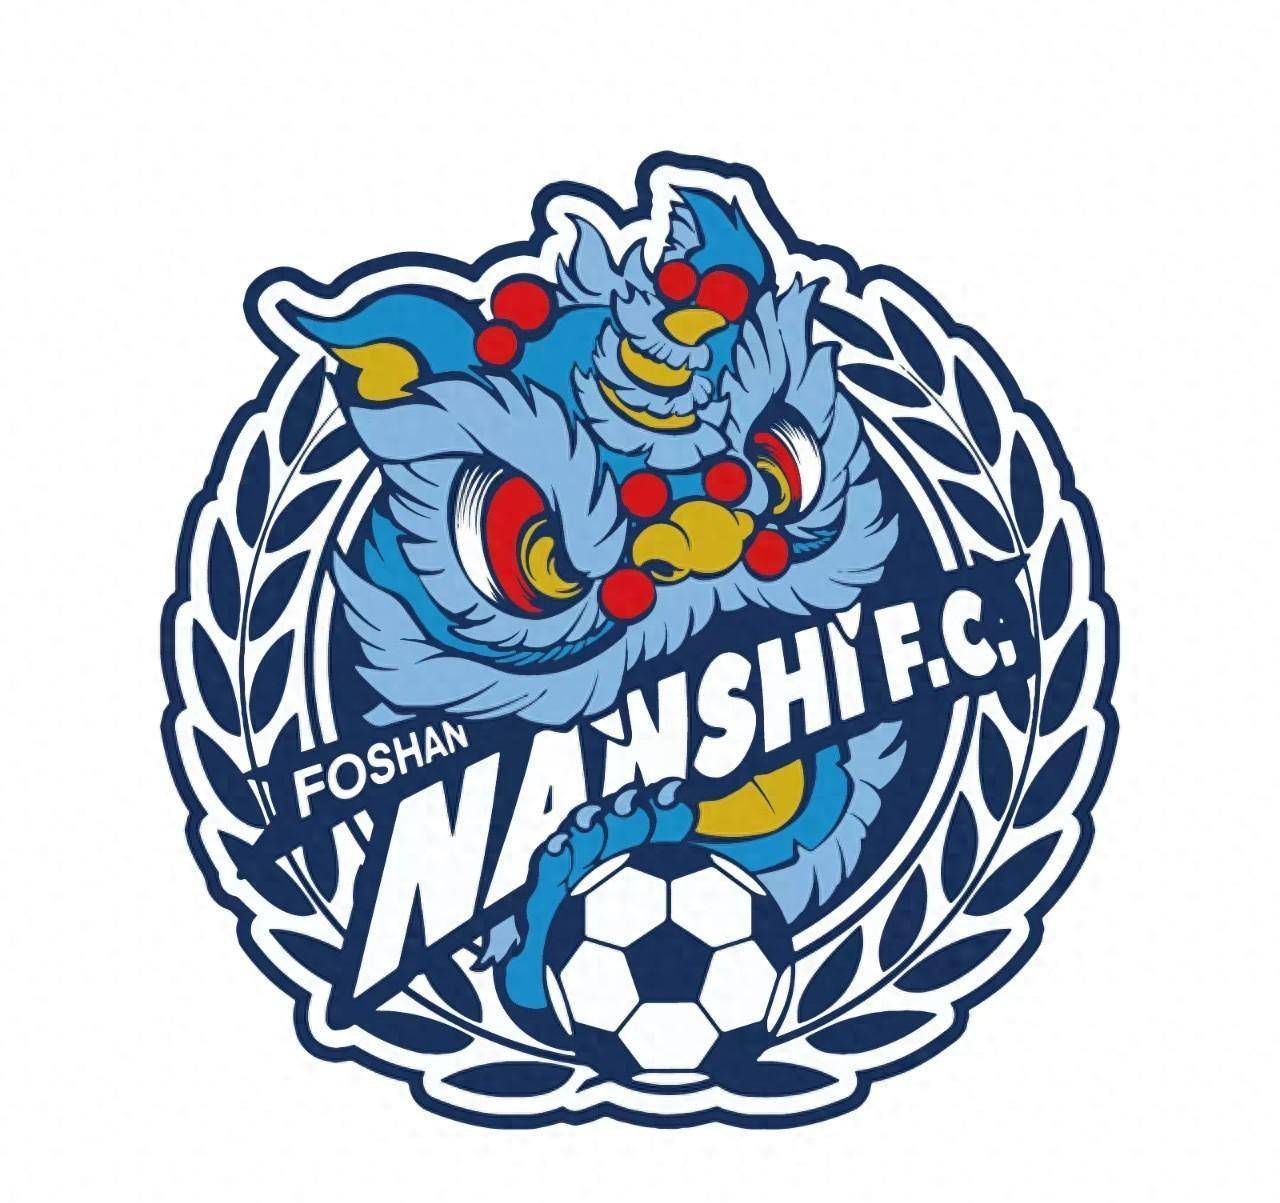 佛山南狮队发布新队徽:以南粤雄狮为灵感,通过手绘方式呈现